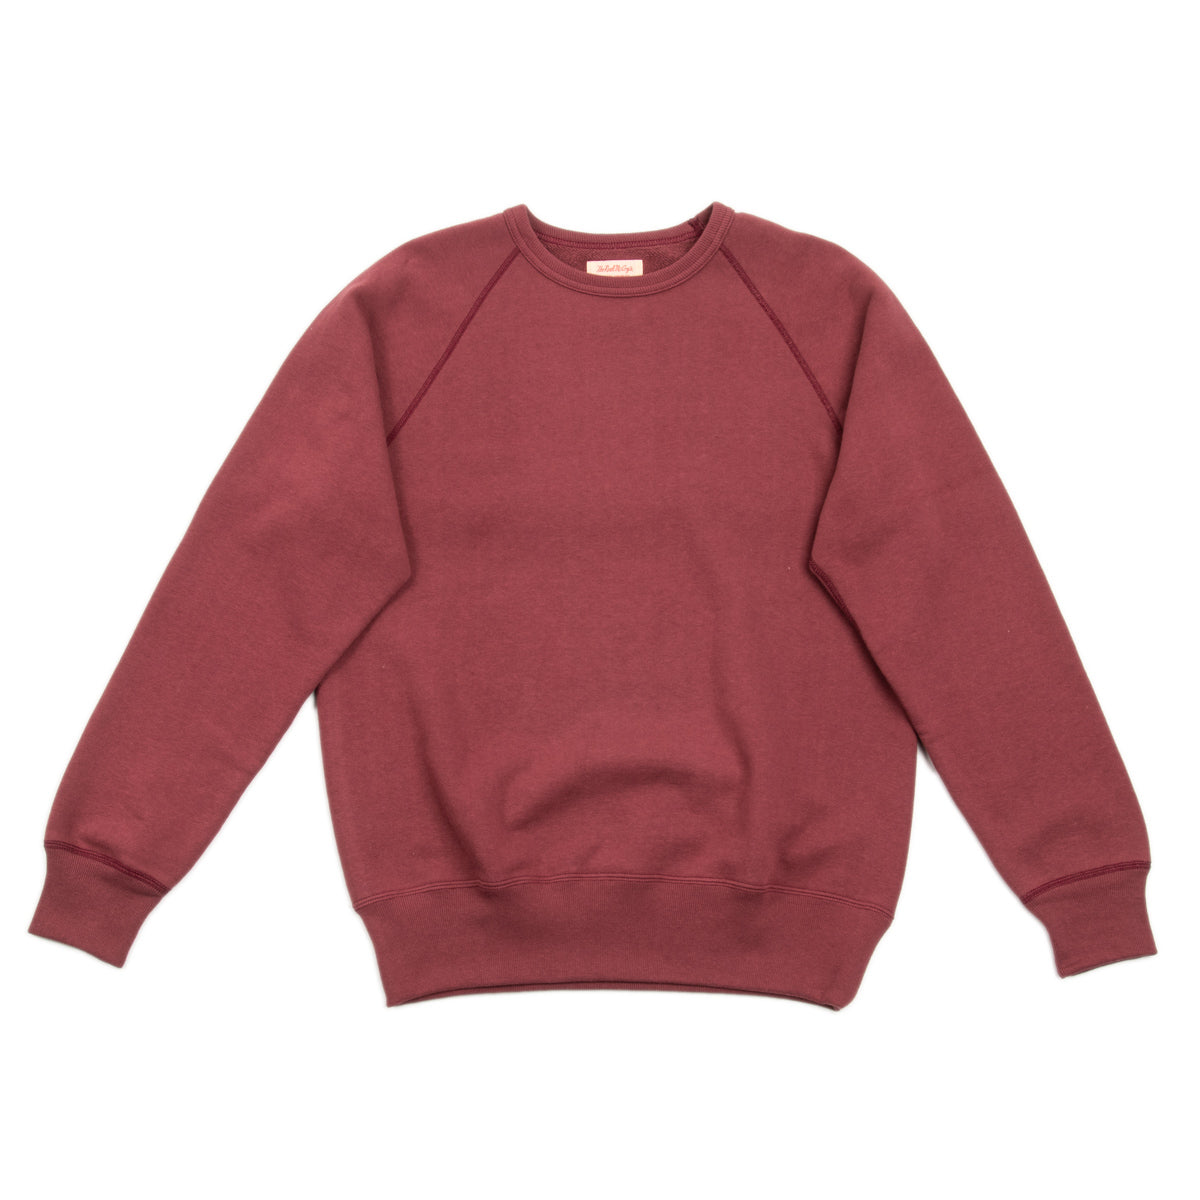 9oz Loopwheel Raglan Sleeve Sweatshirt - Maroon